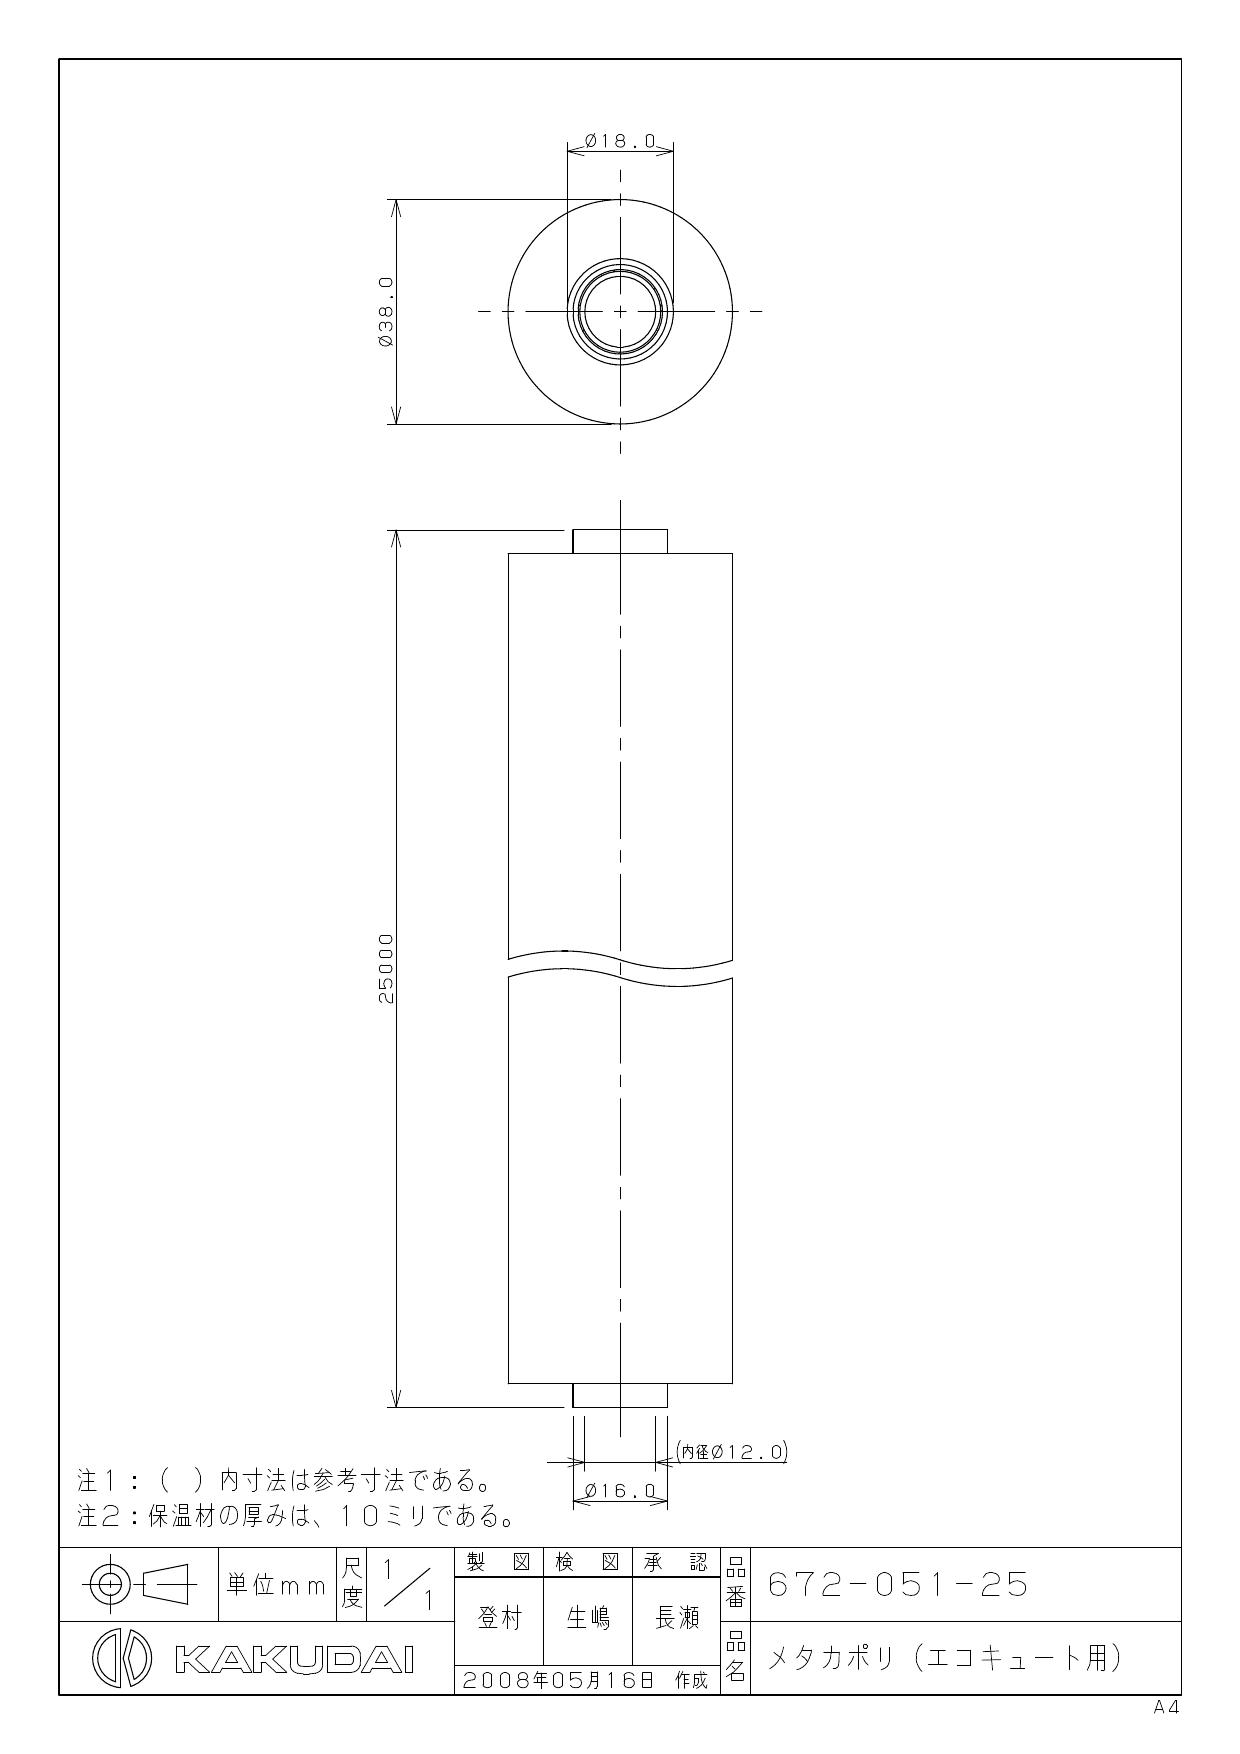 安心発送】 カクダイ KAKUDAI 672-043-2 メタカポリエコキュートセット 10